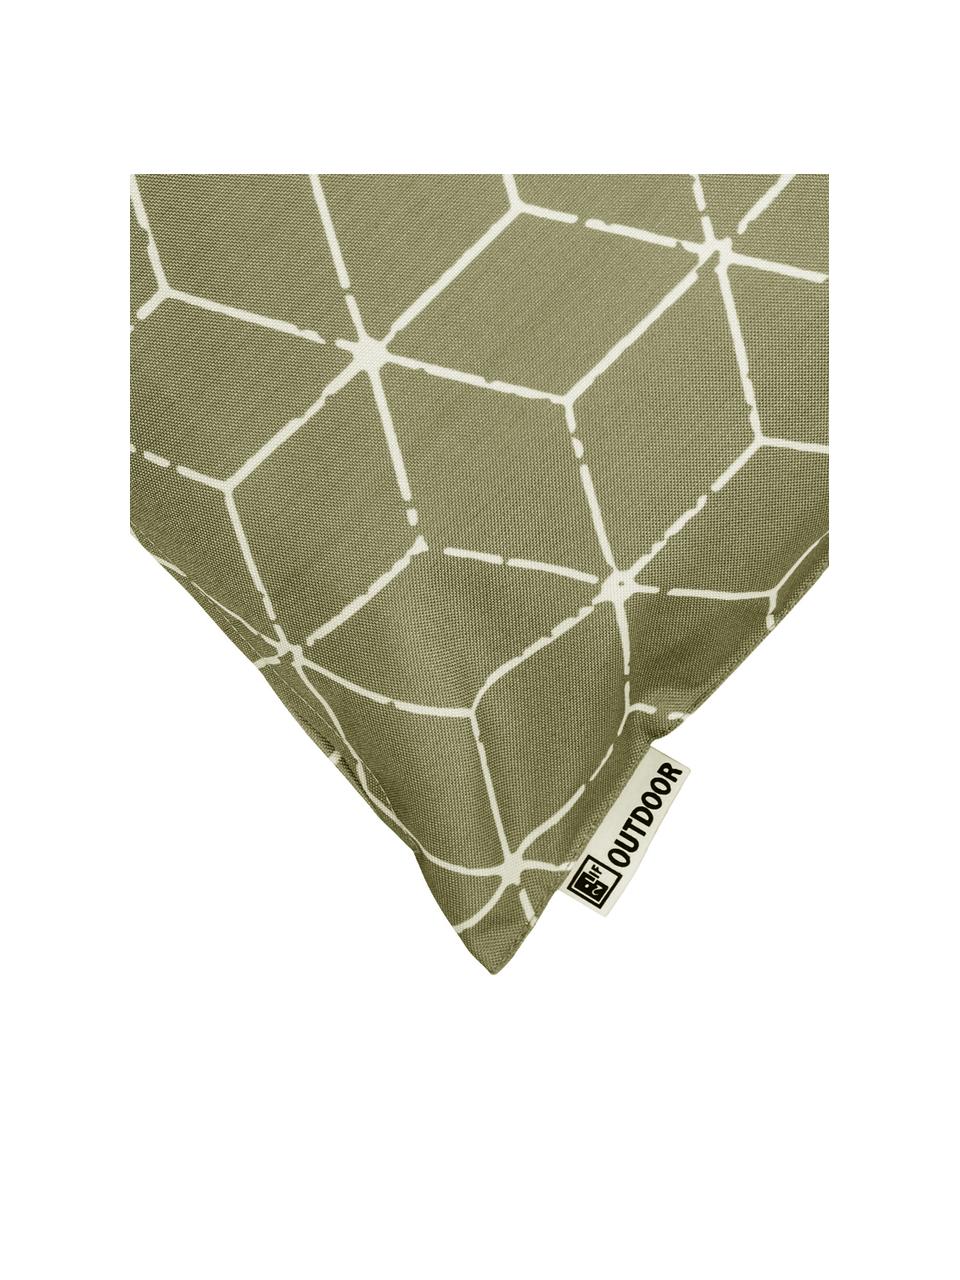 Outdoor-Kissen Cube mit grafischem Muster in Grün/Weiß, mit Inlett, 100% Polyester, Taupe, Weiß, 30 x 50 cm